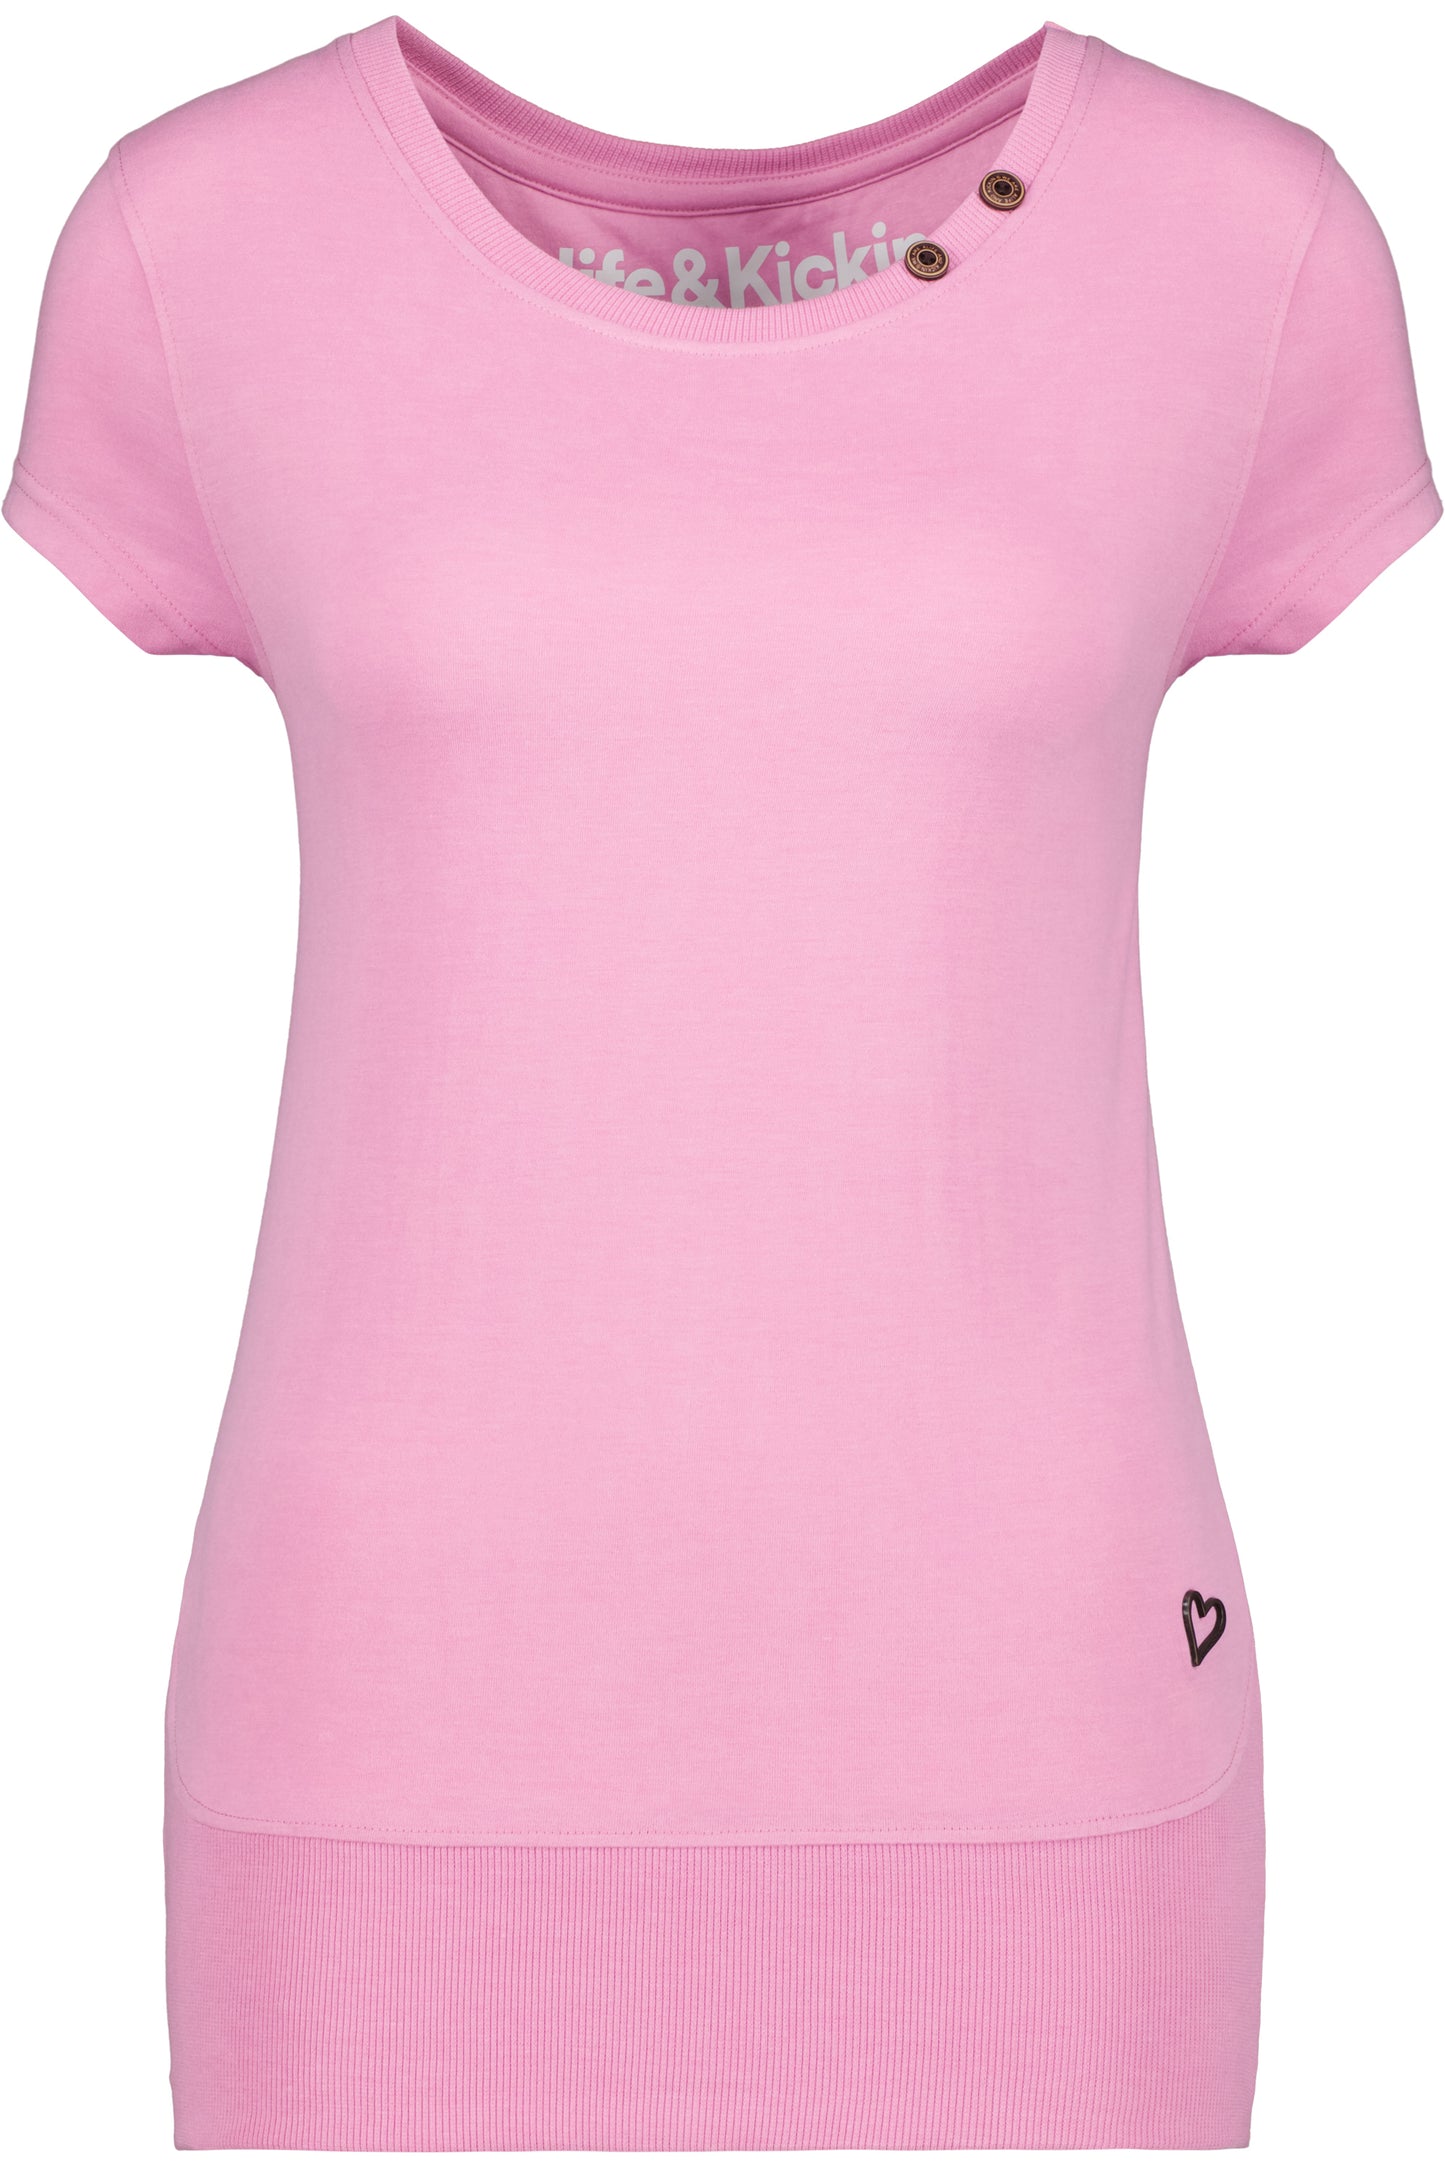 CocoAK A T-Shirt von Alife and Kickin: Farbenfroh und modisch Pink